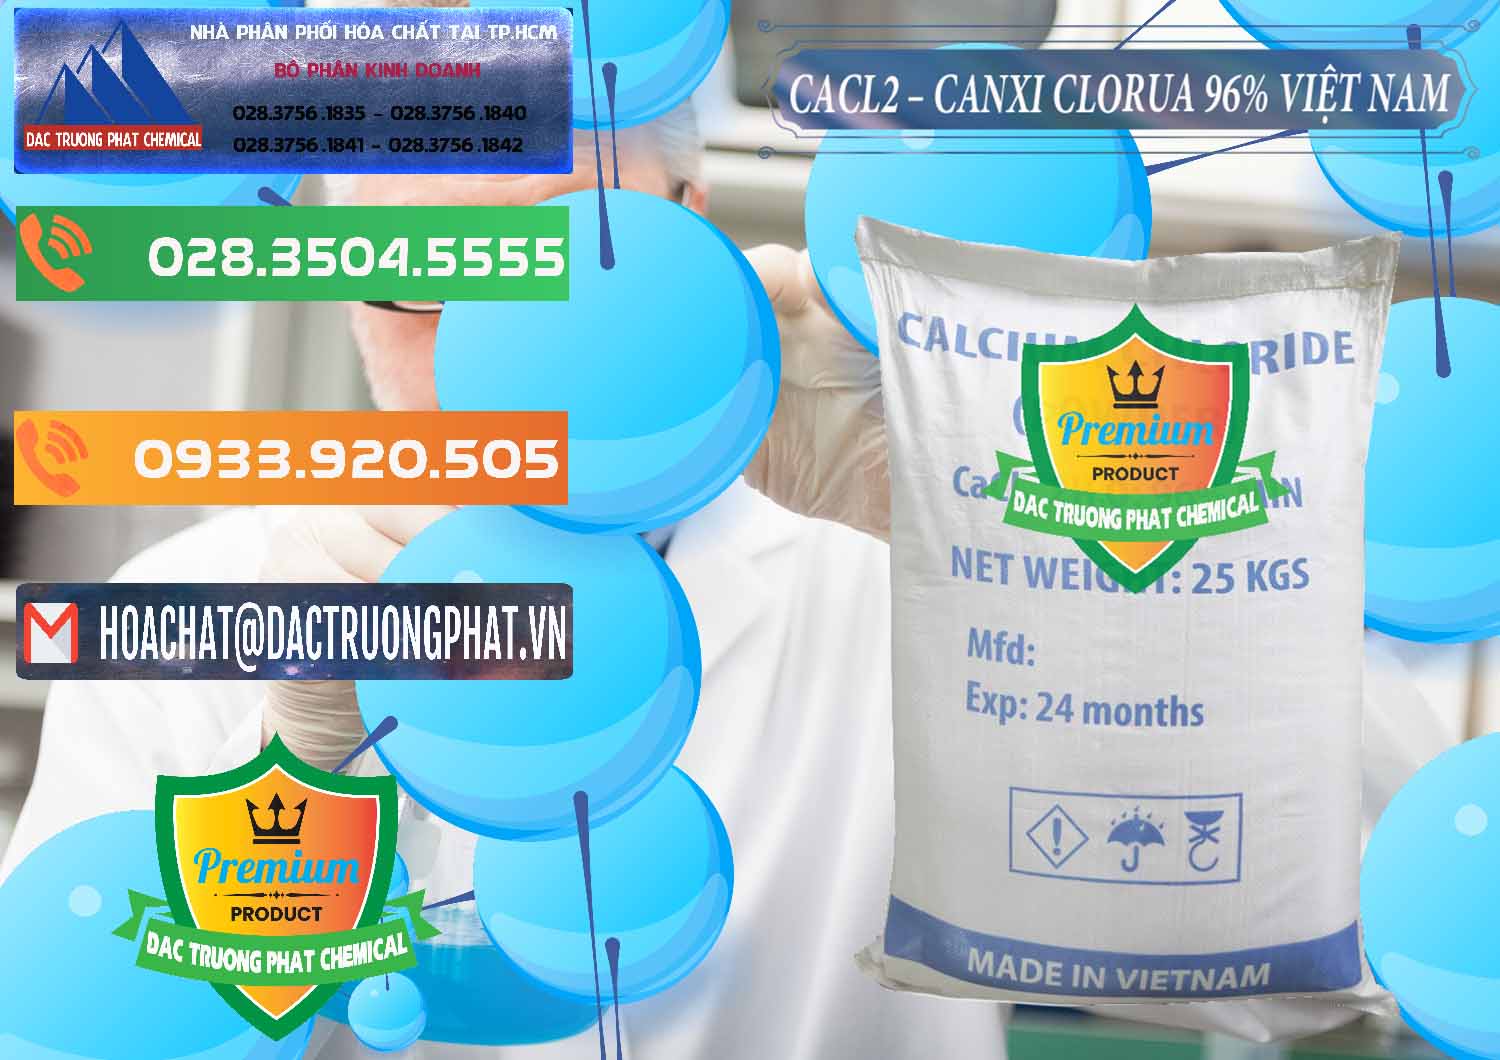 Cty phân phối - bán CaCl2 – Canxi Clorua 96% Việt Nam - 0236 - Nơi chuyên phân phối ( cung ứng ) hóa chất tại TP.HCM - hoachatxulynuoc.com.vn